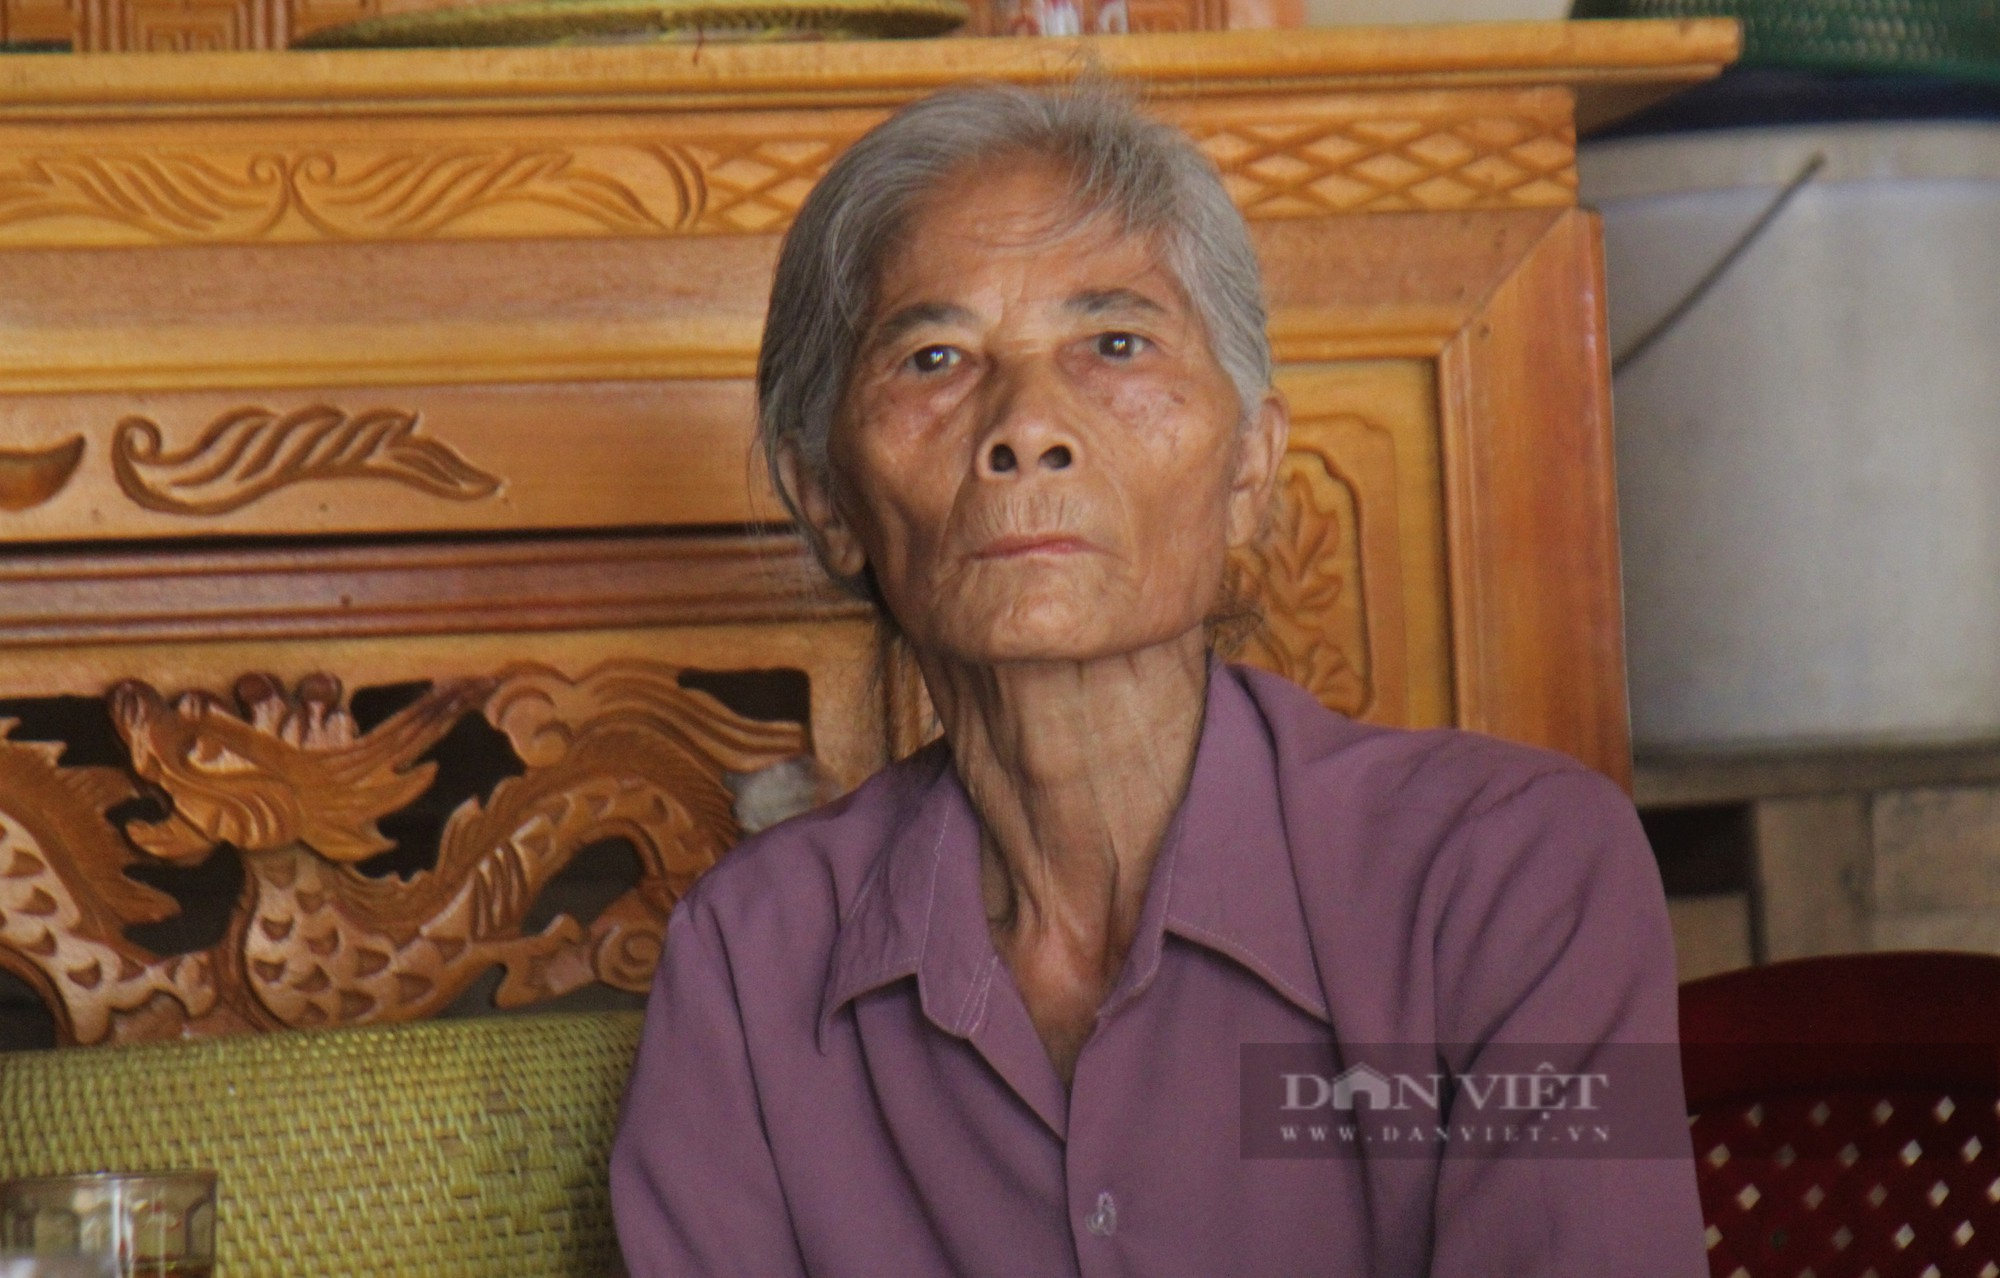 Cụ bà sống lay lắt trong căn nhà dọa sập được bạn đọc Dân Việt giúp đỡ xây dựng một ngôi nhà mới - Ảnh 6.